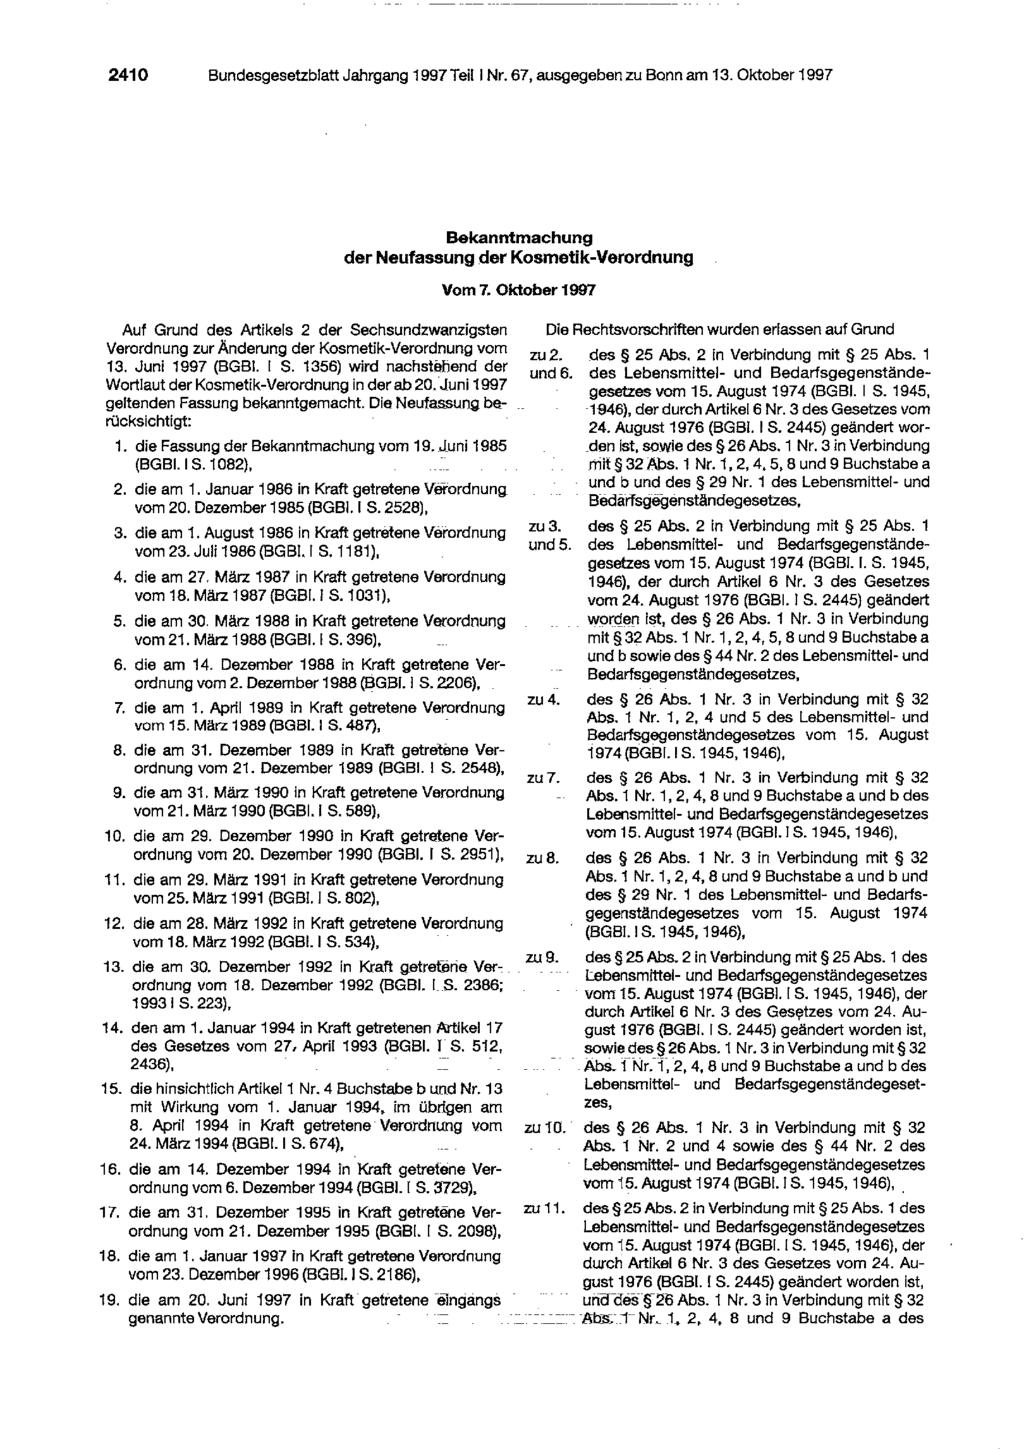 2410 Bundesgesetzblatt Jahrgang 1997 Teil I Nr. 67, ausgegeben zu Bonn am 13. Oktober 1997 Auf Grund des Artikels 2 der Sechsundzwanzigsten Verordnung zur Änderung der Kosmetik-Verordnung vom 13.